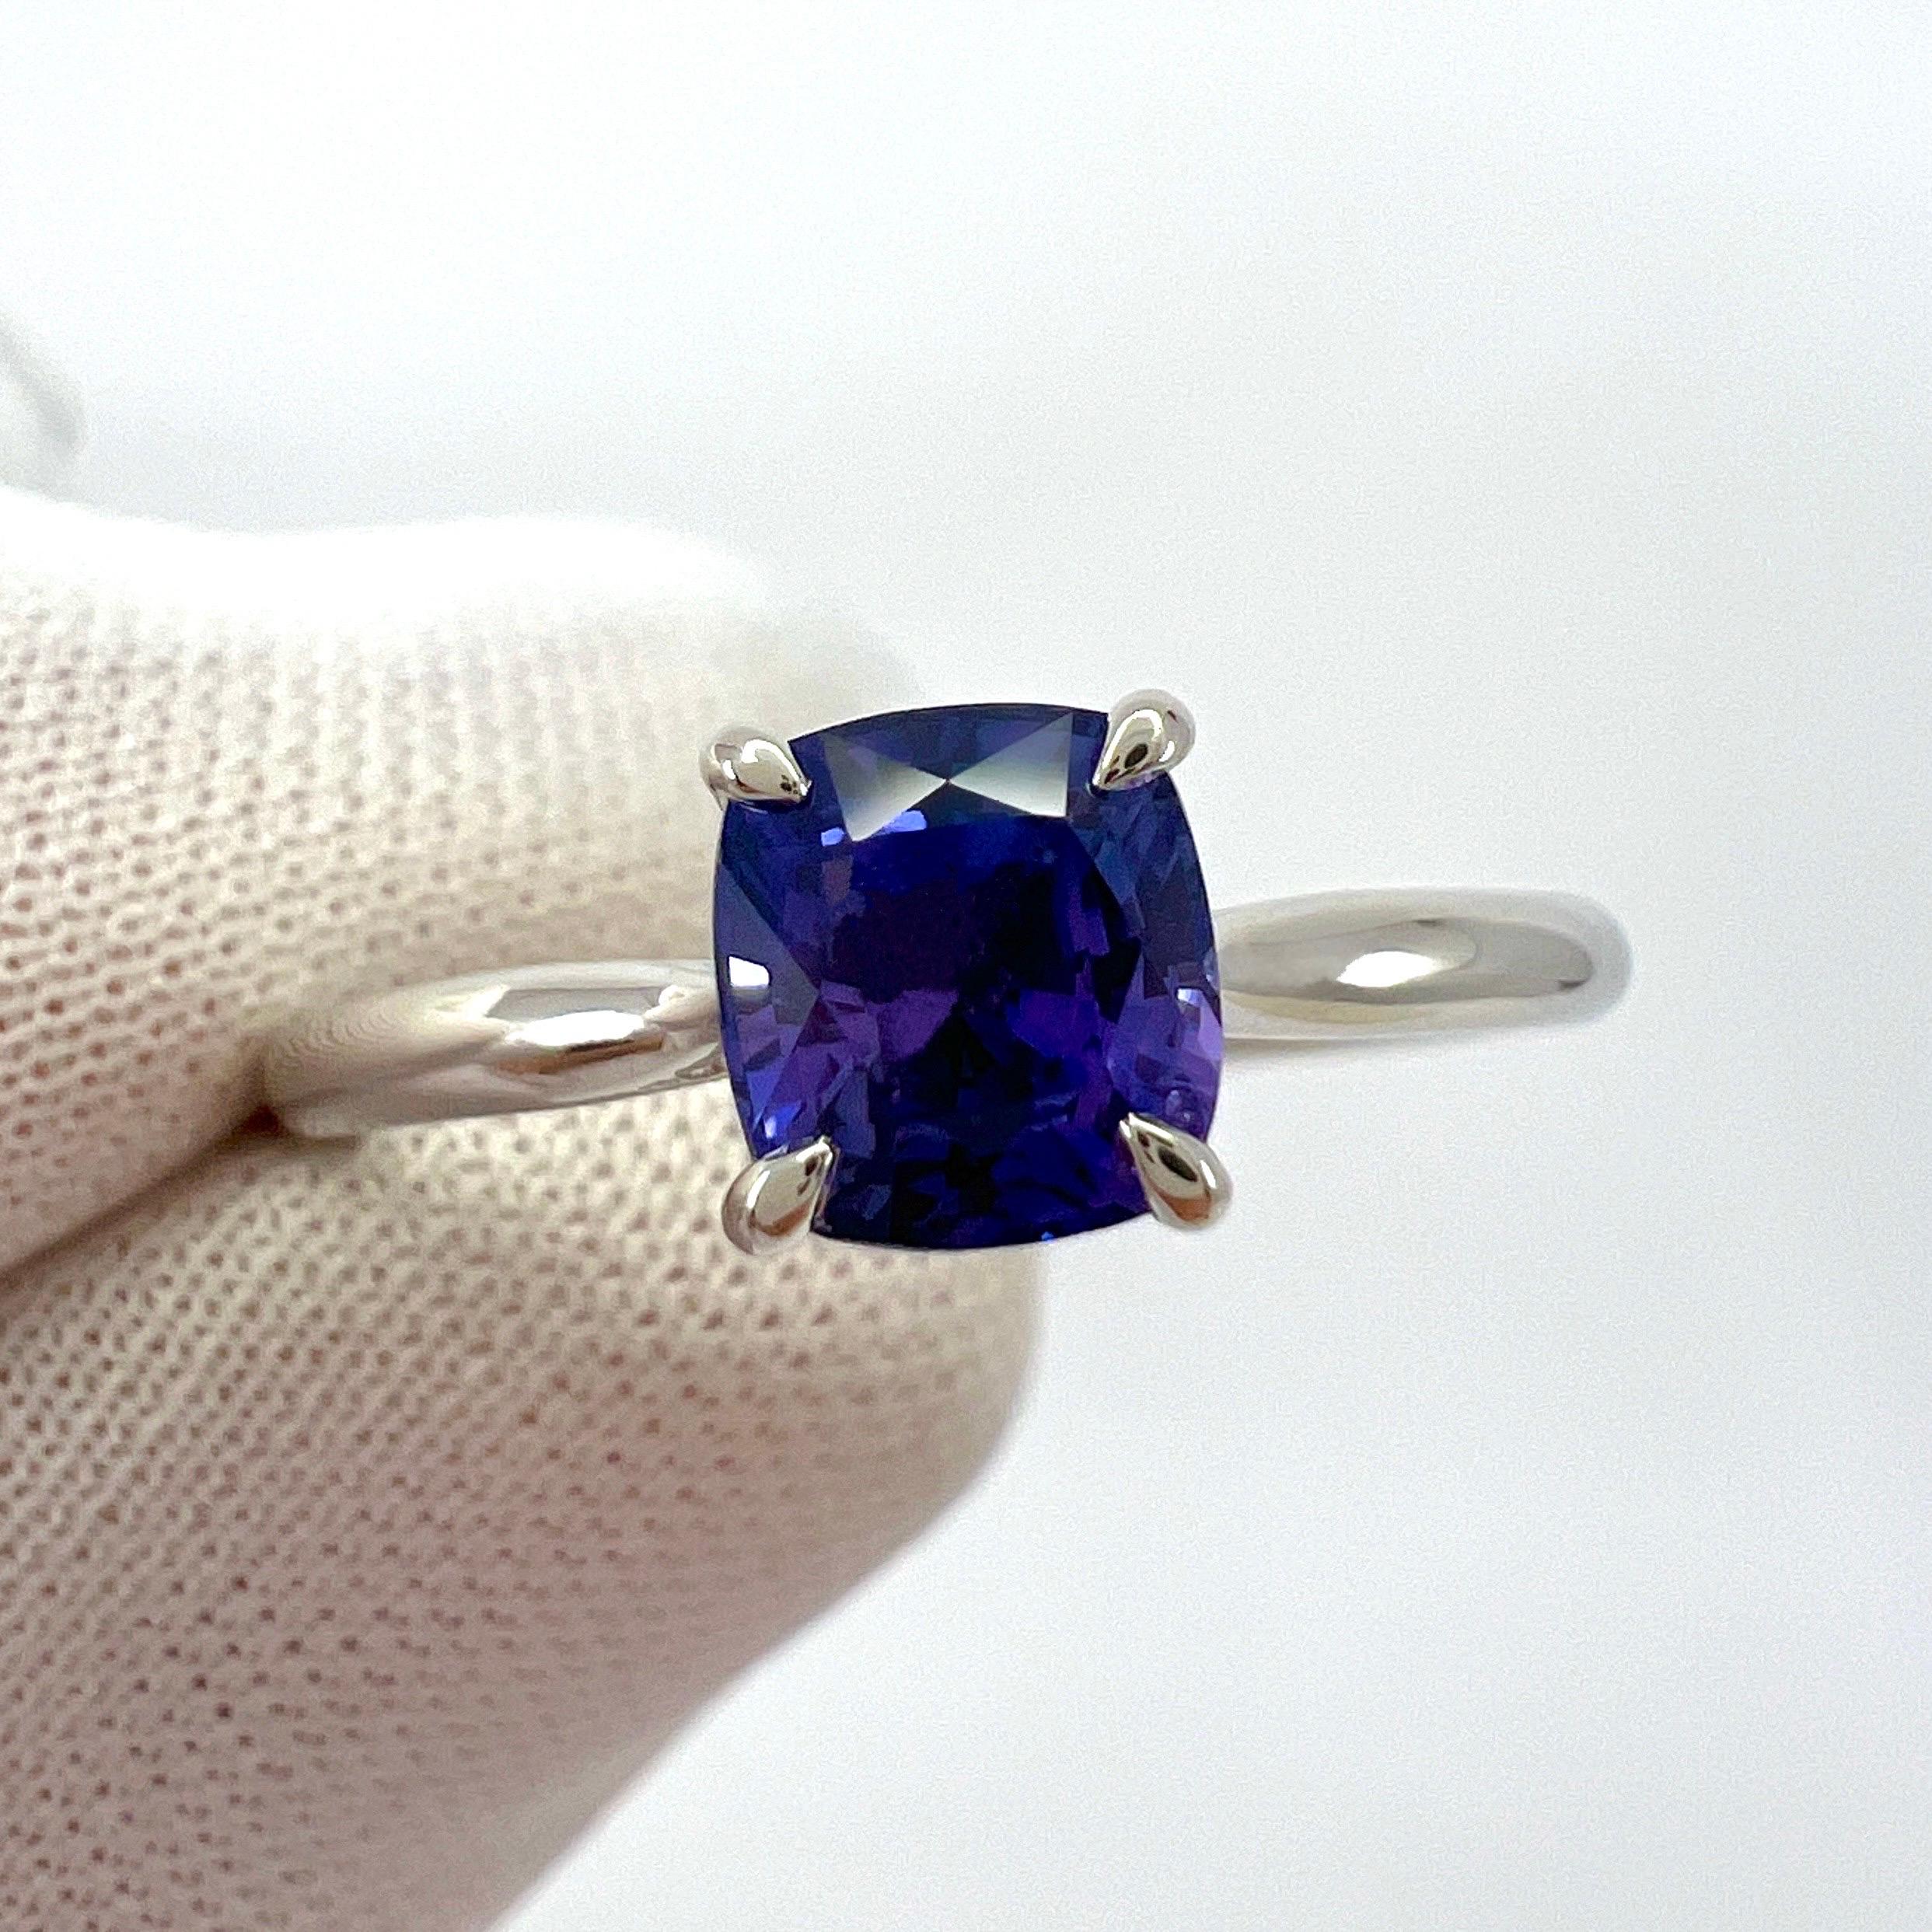 Nature Vivid Violet Blue Cushion Cut Sapphire 18k White Gold Solitaire Ring.

Saphir de 1,08 carat certifié par le GIA, d'une couleur bleu-violet éclatante et d'une excellente clarté. Pierre très propre. VS.
Il présente également une excellente